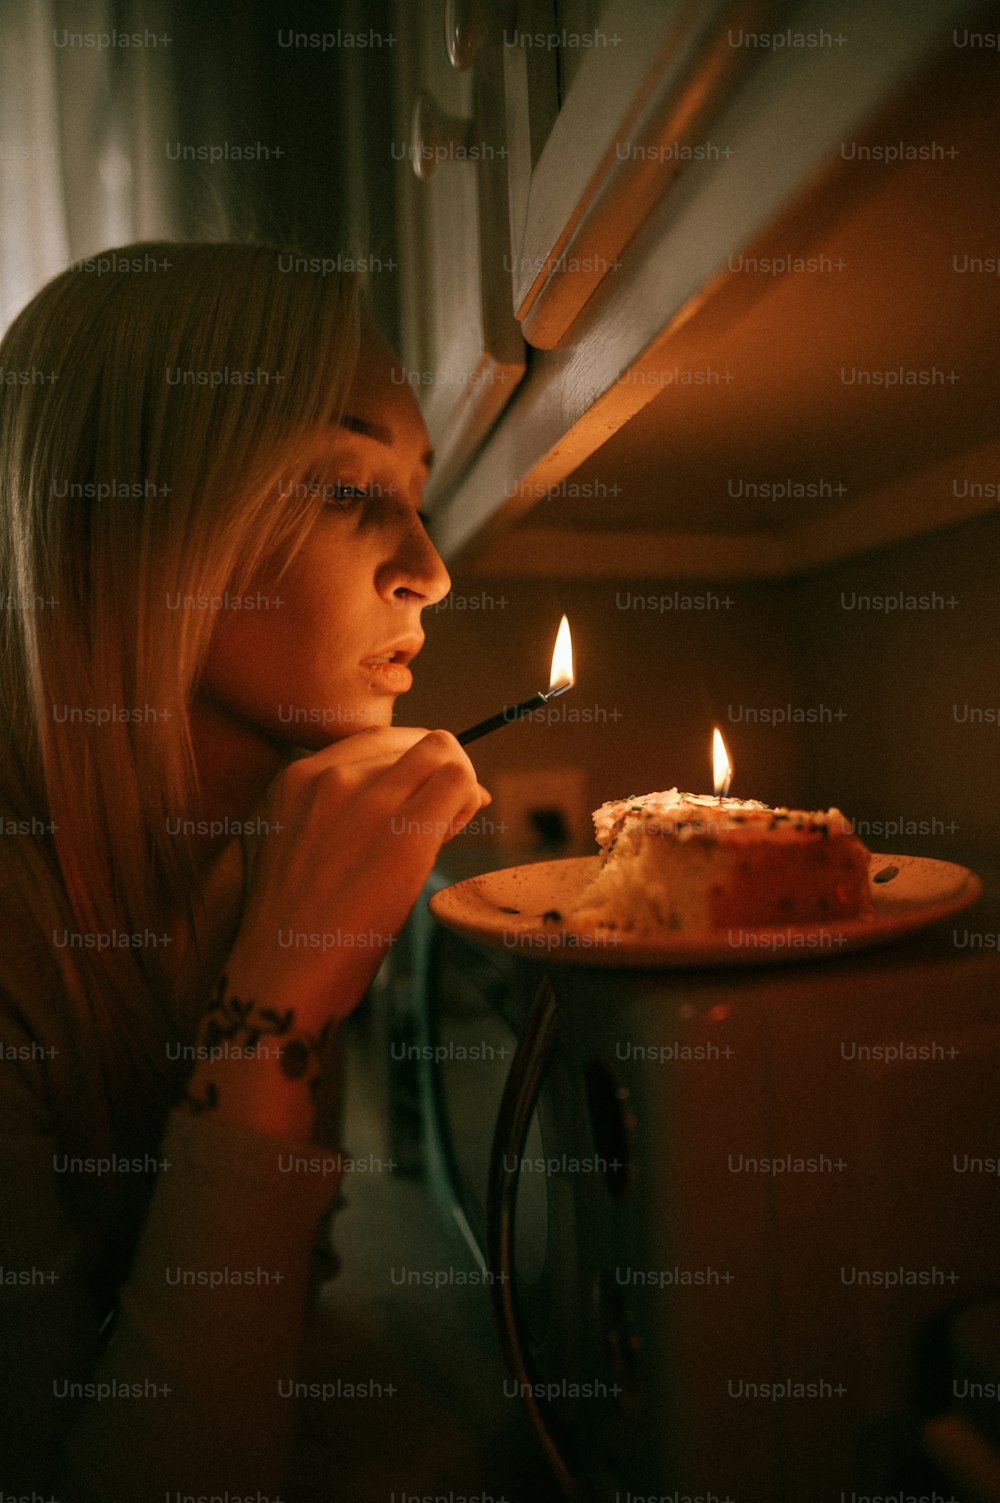 Eine Frau betrachtet einen Kuchen mit einer brennenden Kerze darauf